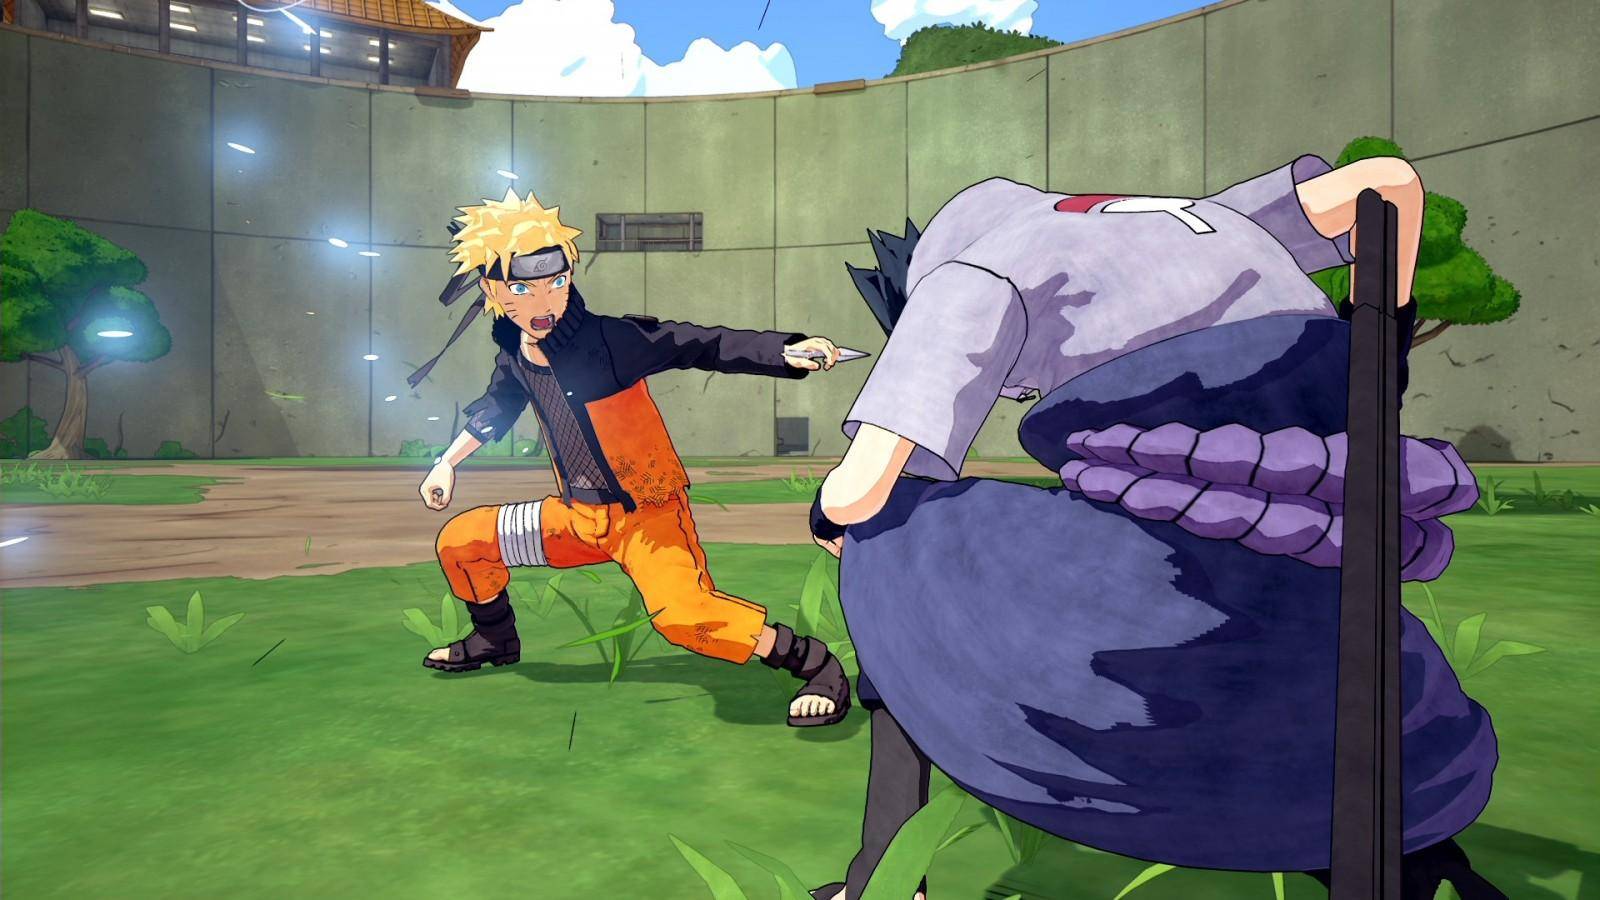 Naruto desata su poder con nuevas imágenes para el juego Naruto To Boruto: Shinobi Striker 1